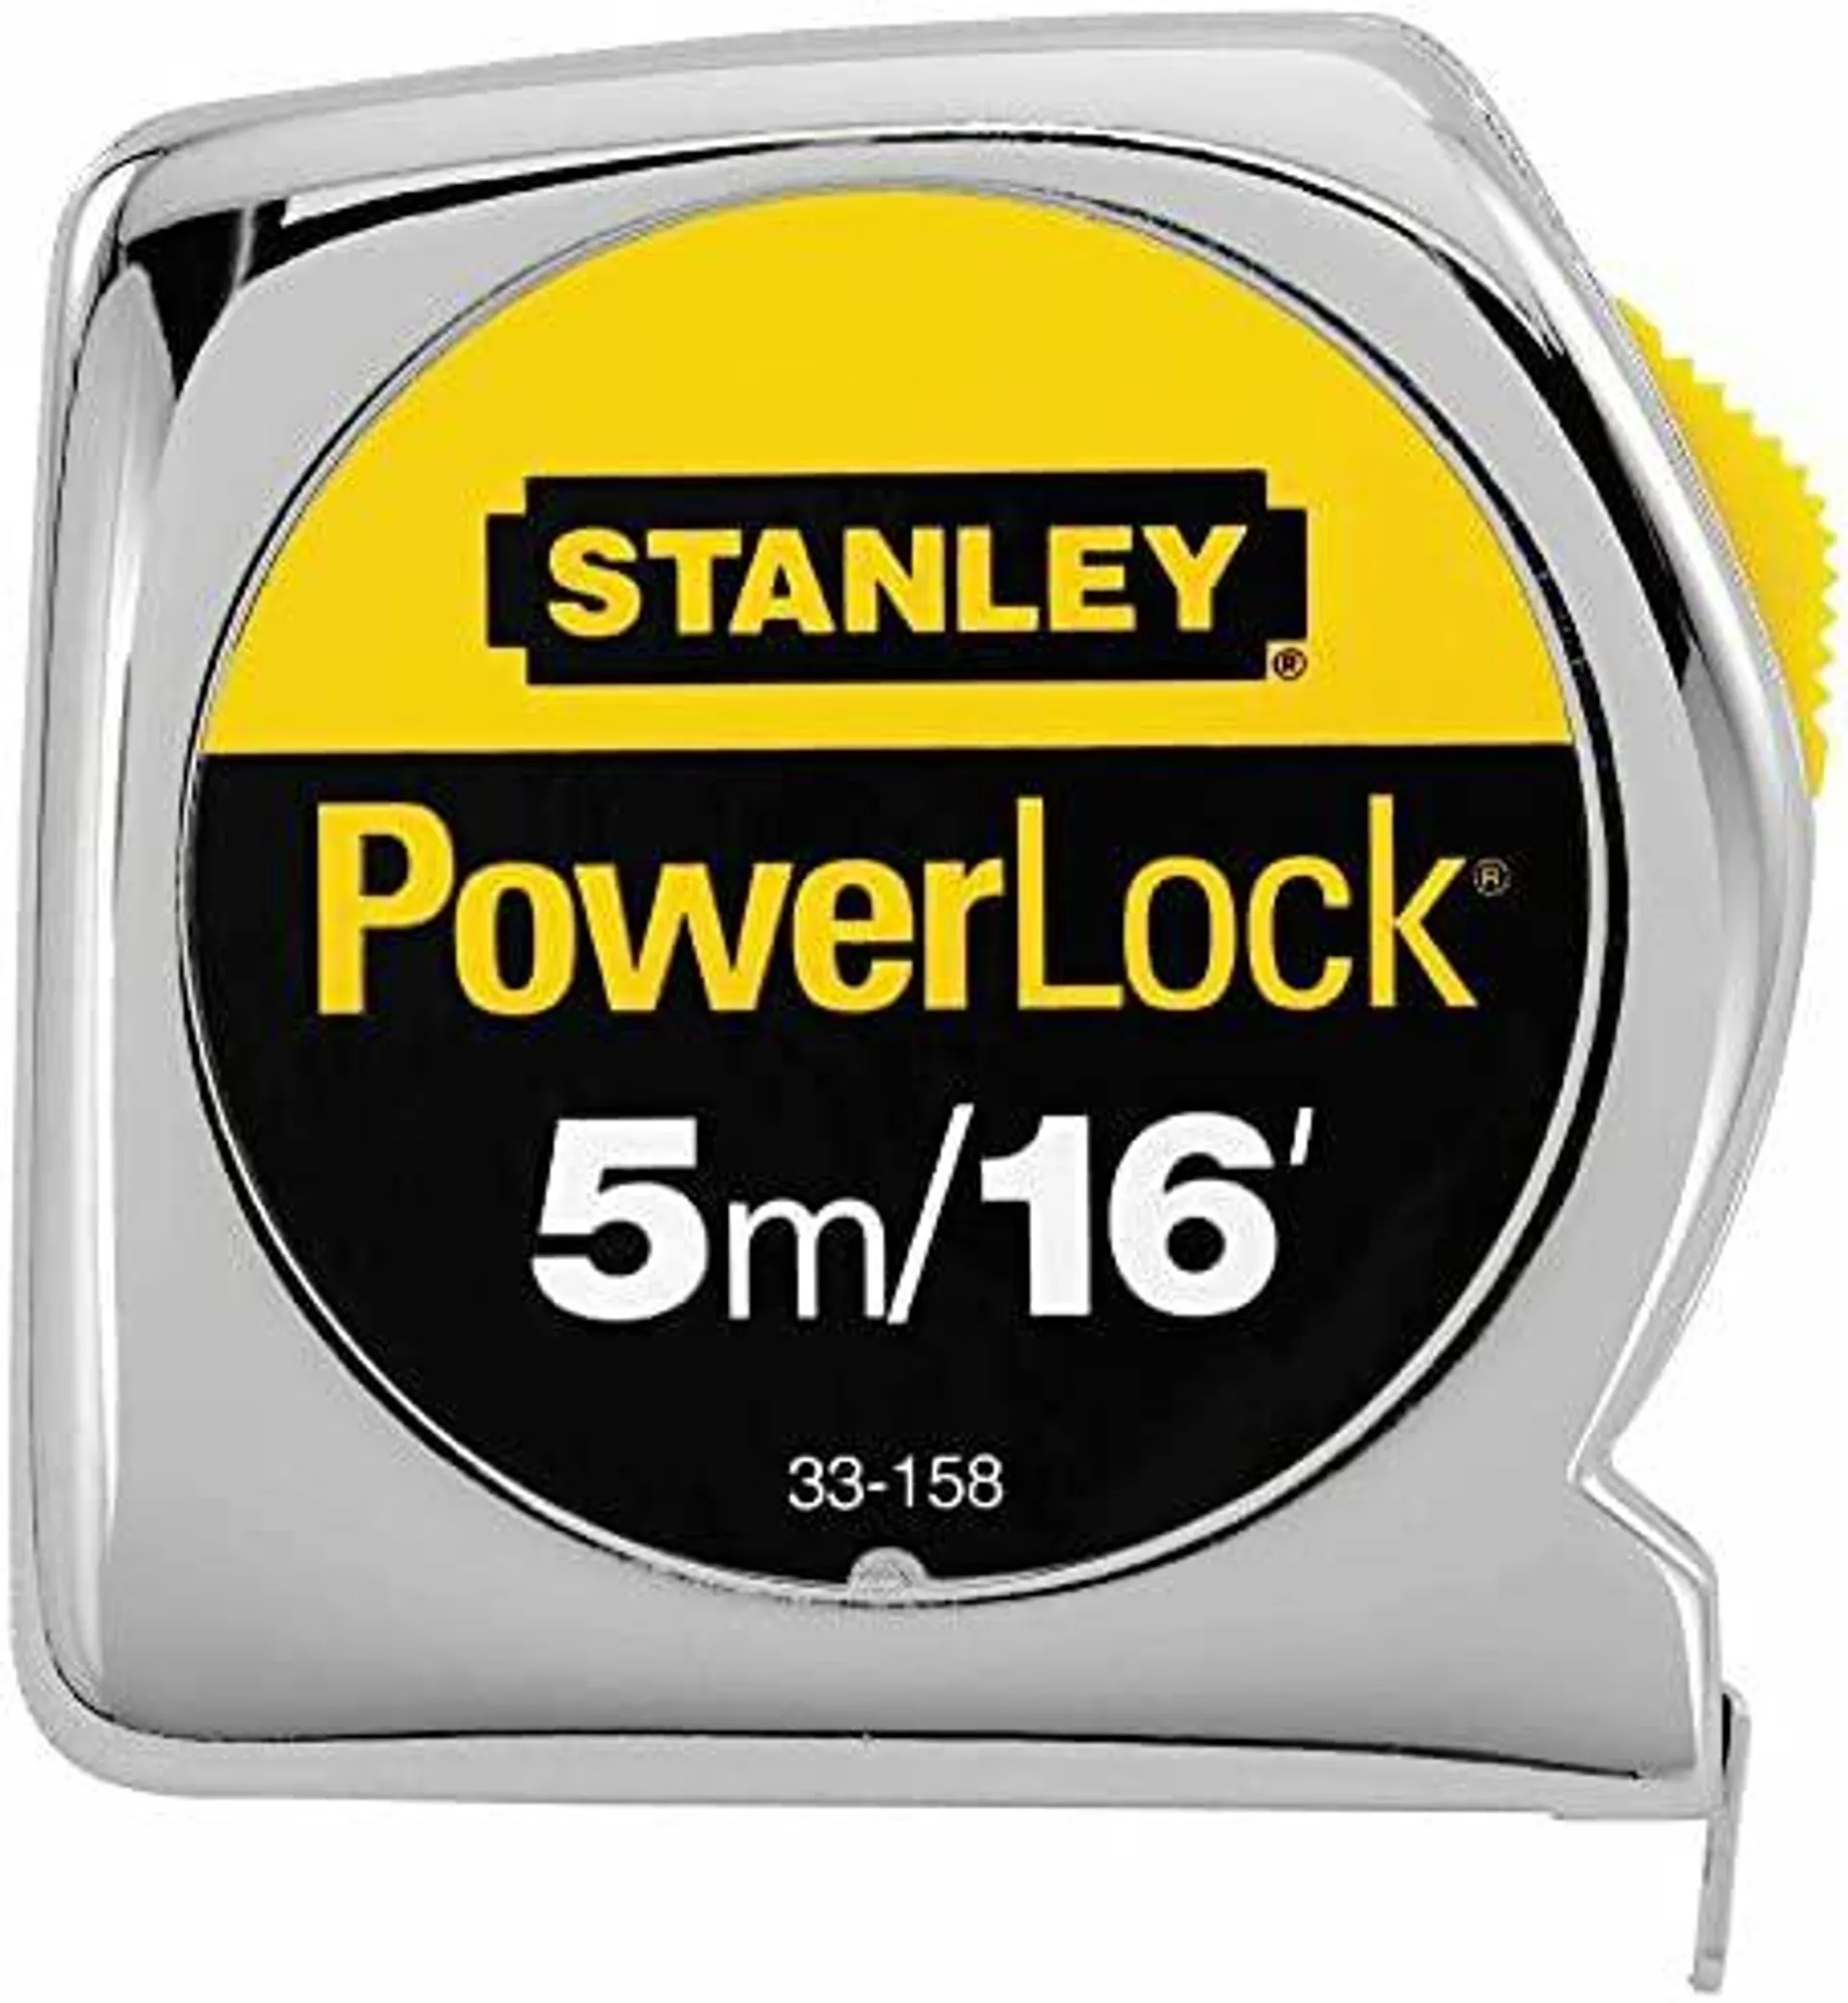 2 Pack Stanley 33-158 5m/16 ft x 3/4 in PowerLock Tape Measure - Metric / Standard Graduations